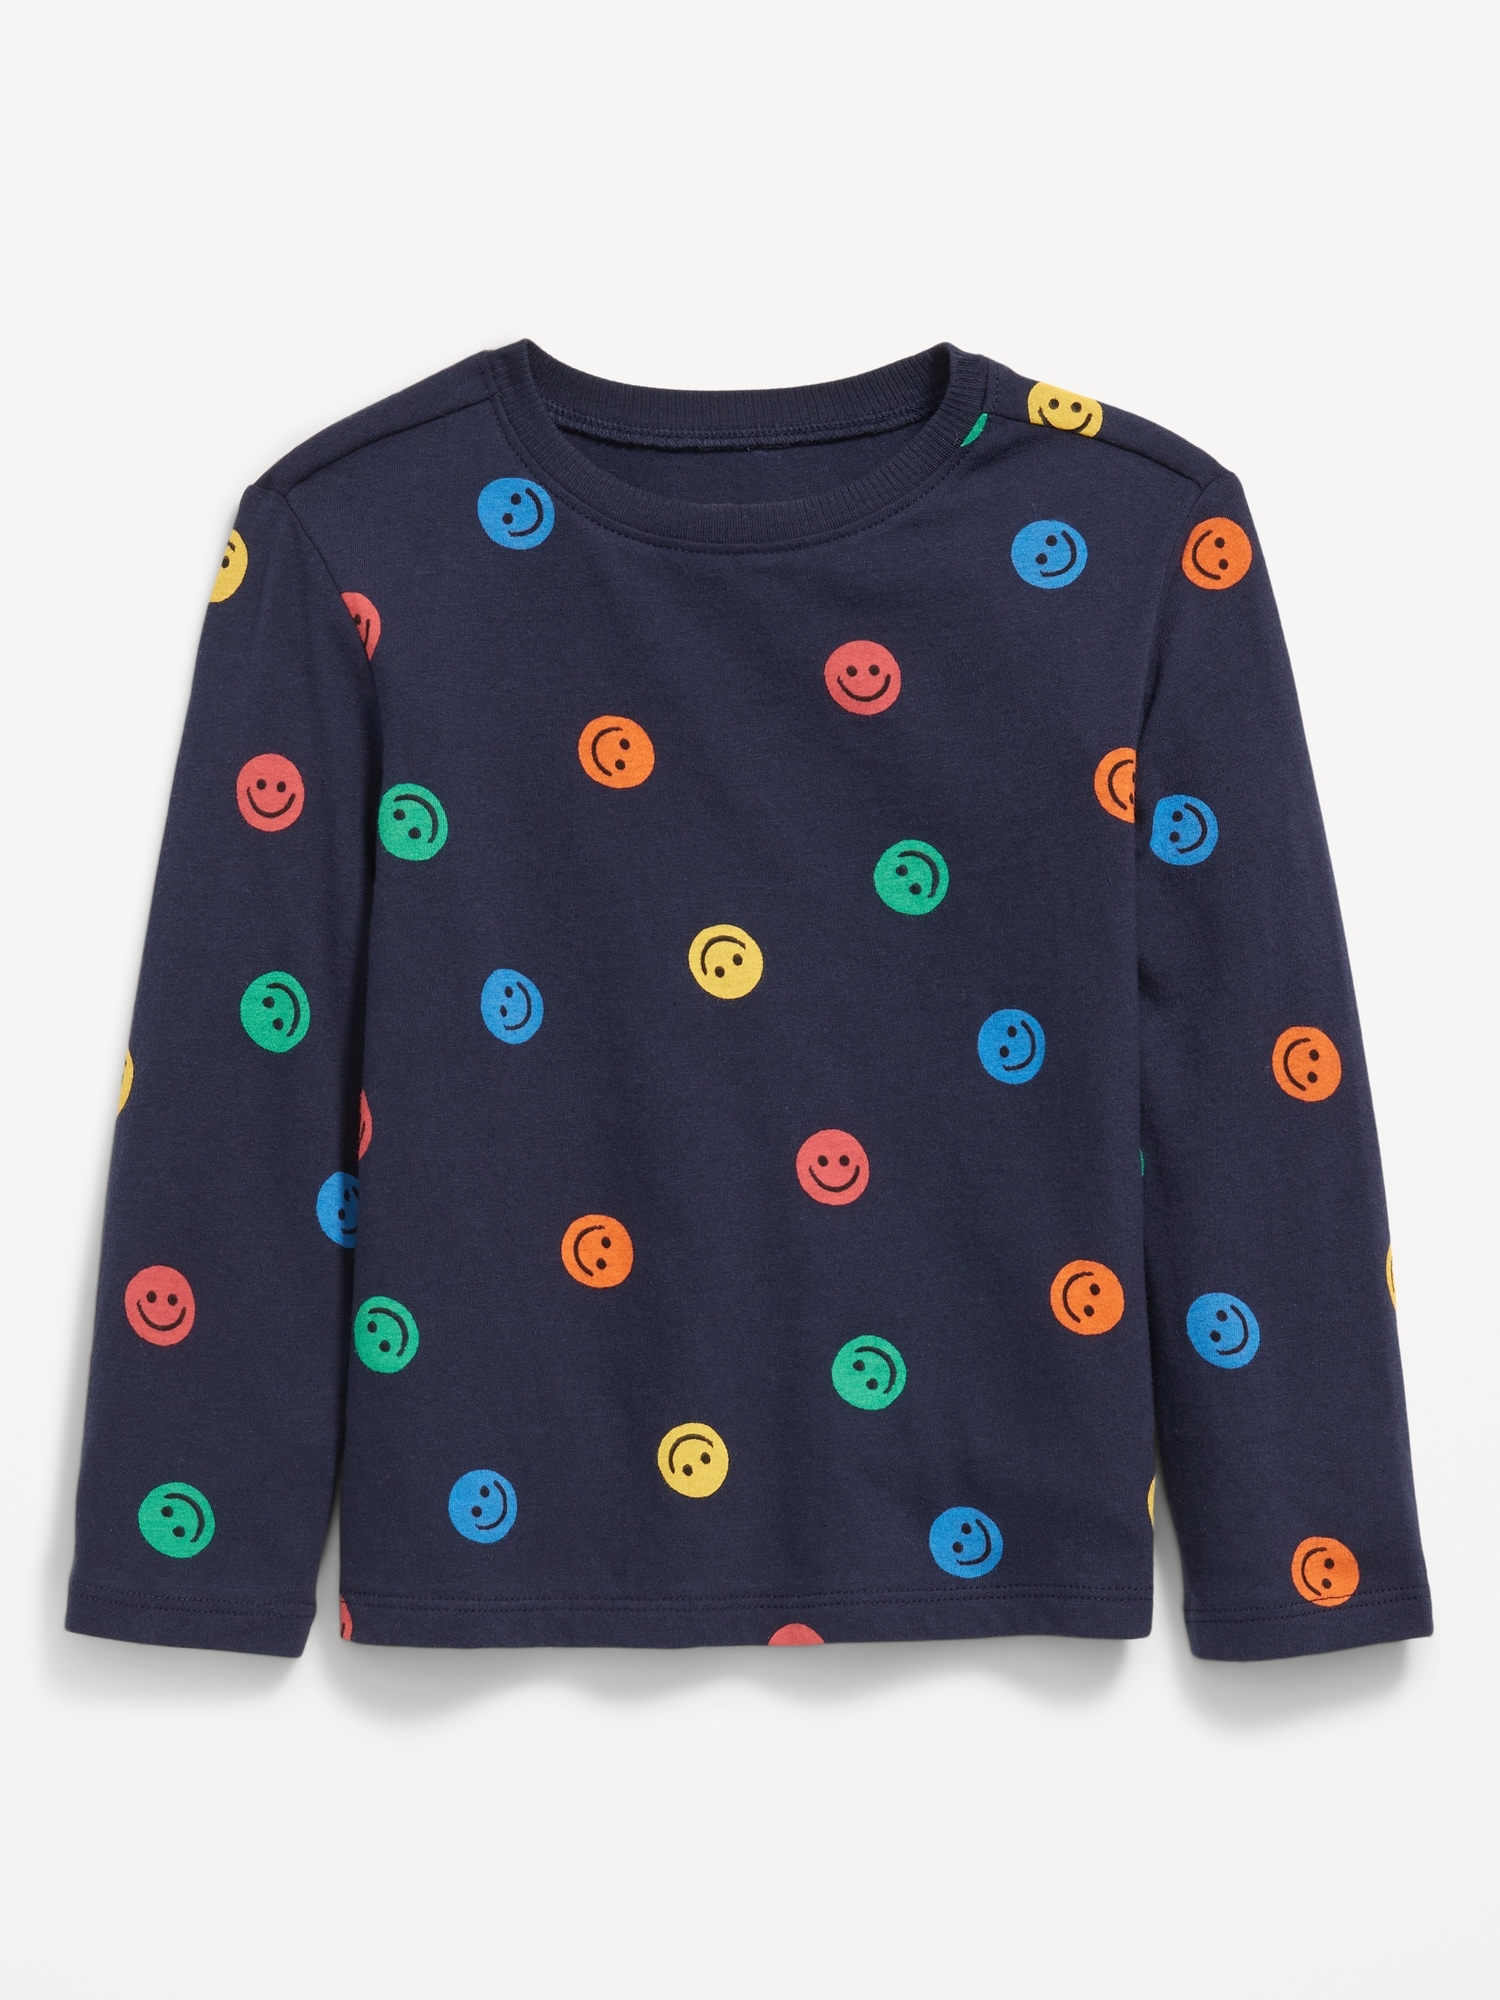 Unisex Long-Sleeve T-Shirt for Toddler